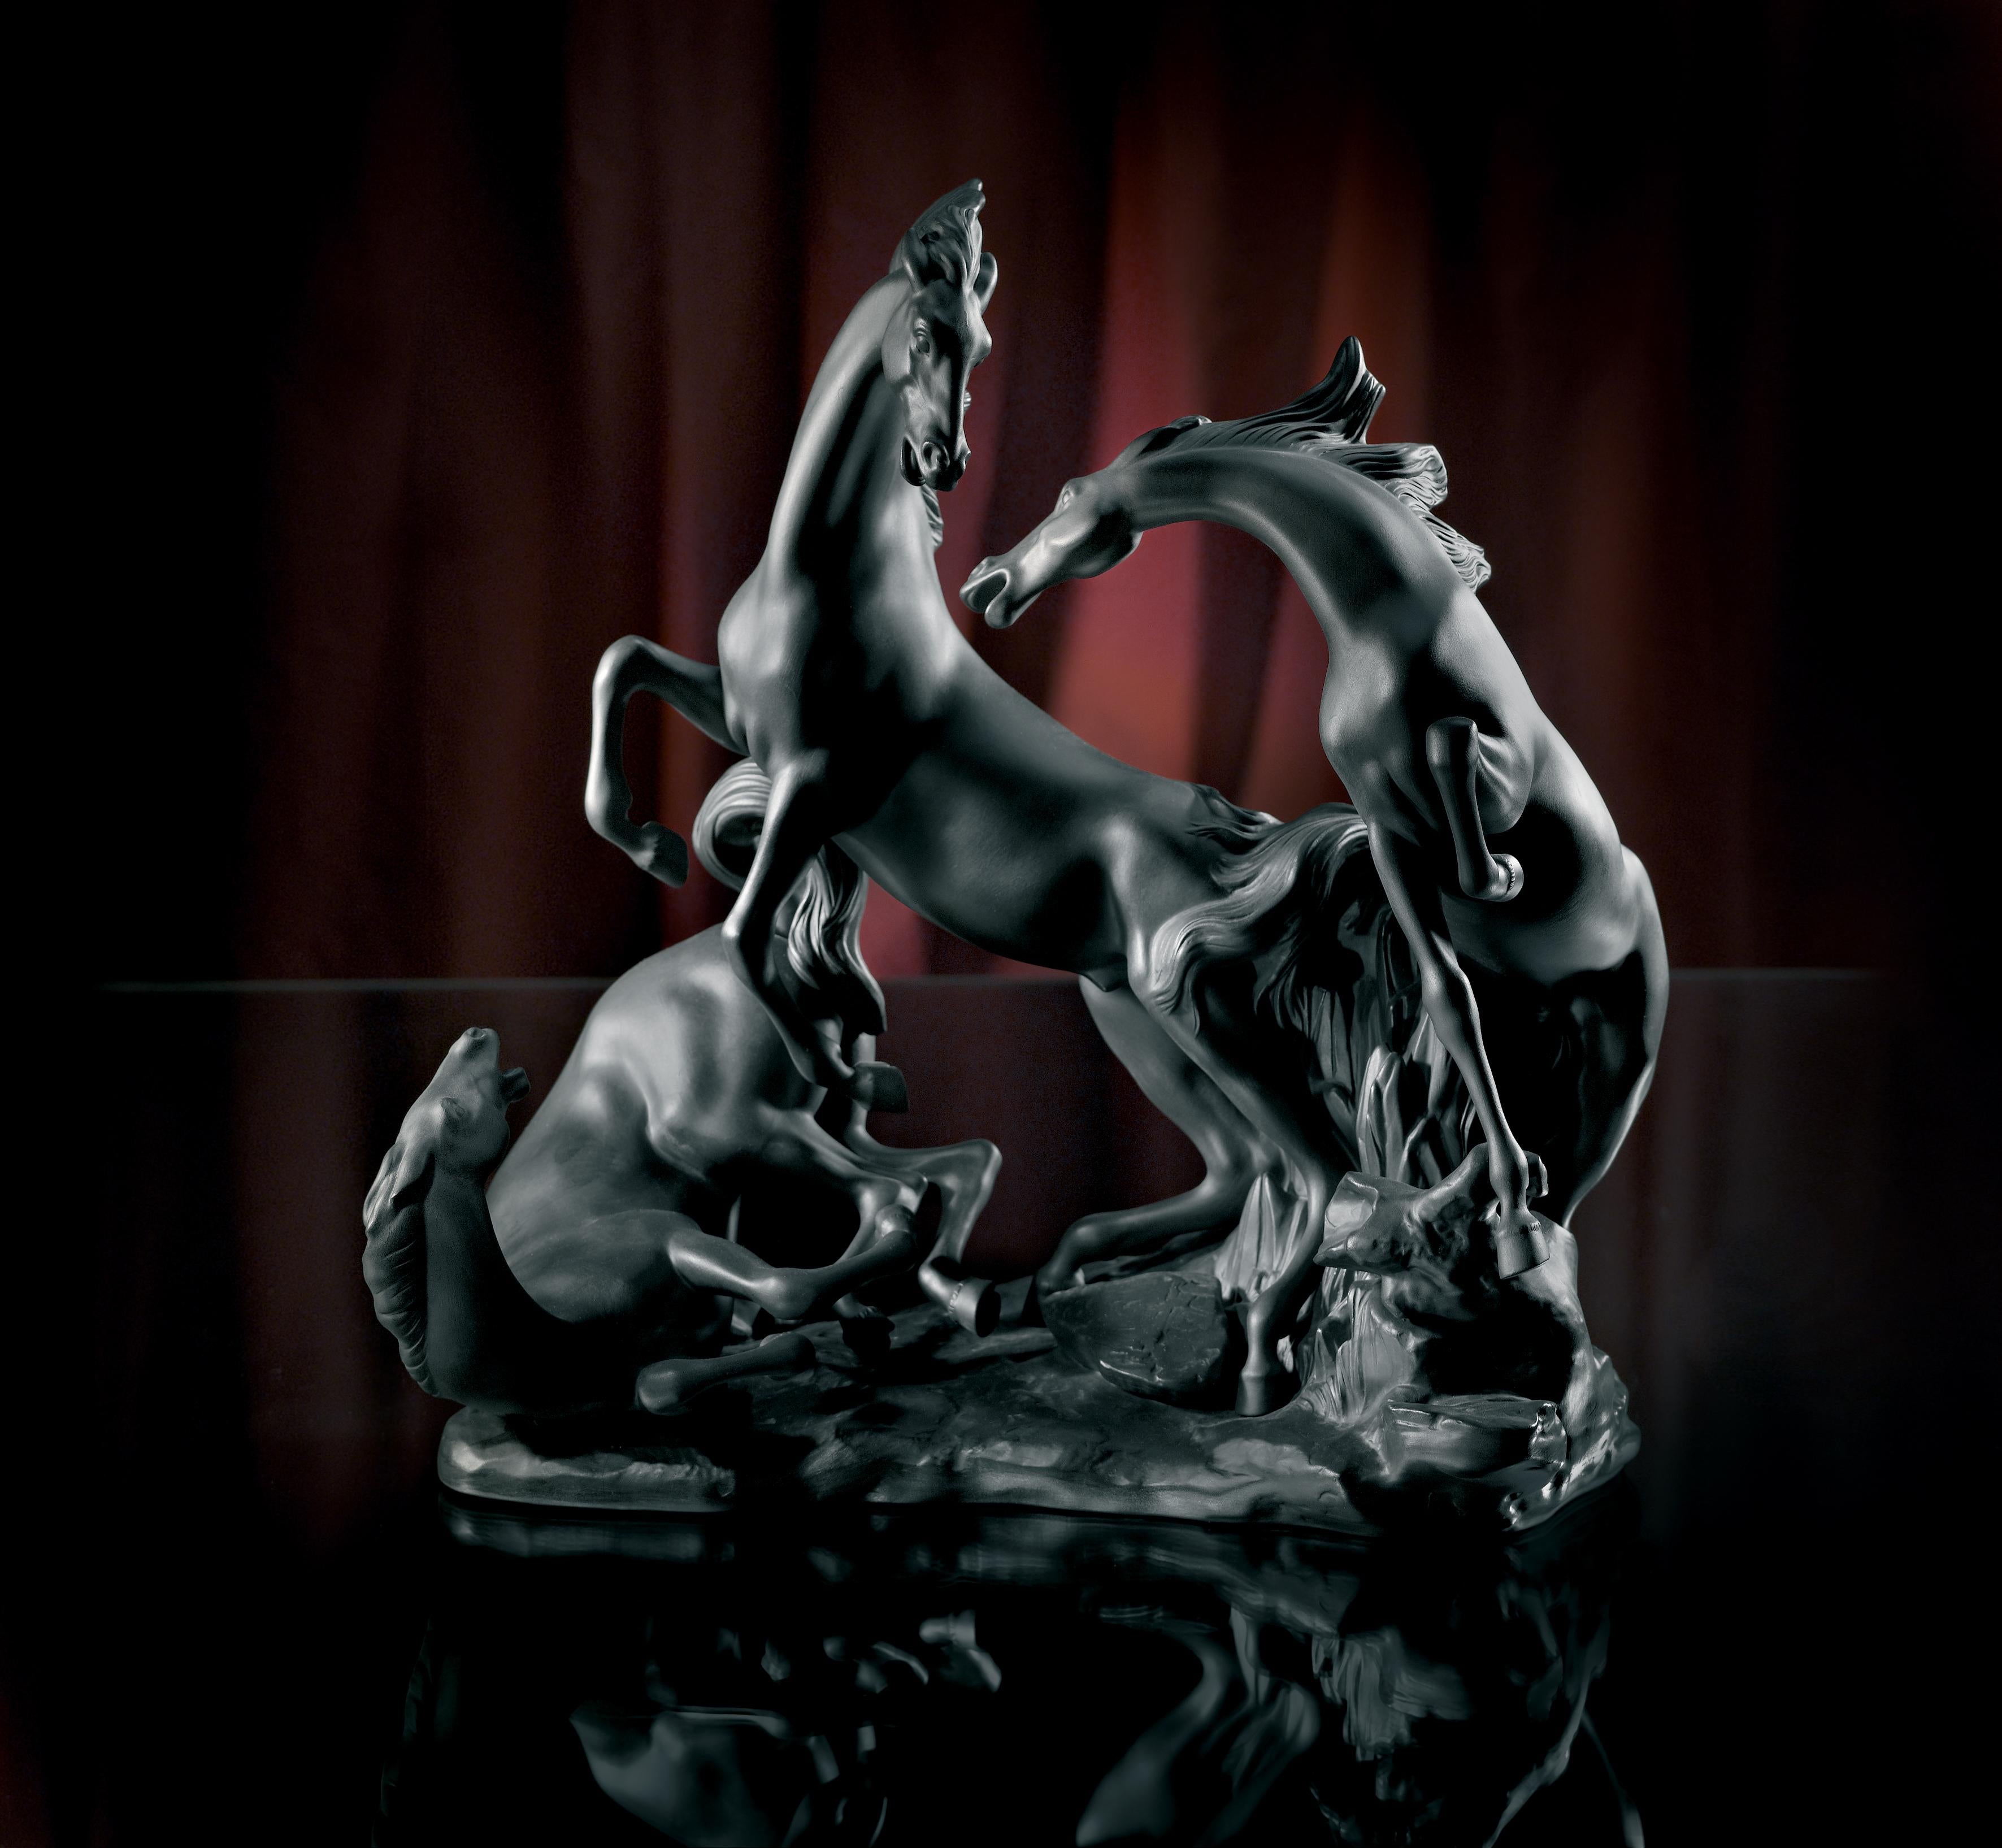 Sculpture de trois chevaux en porcelaine d'un noir profond, secoués et remués ensemble.
       